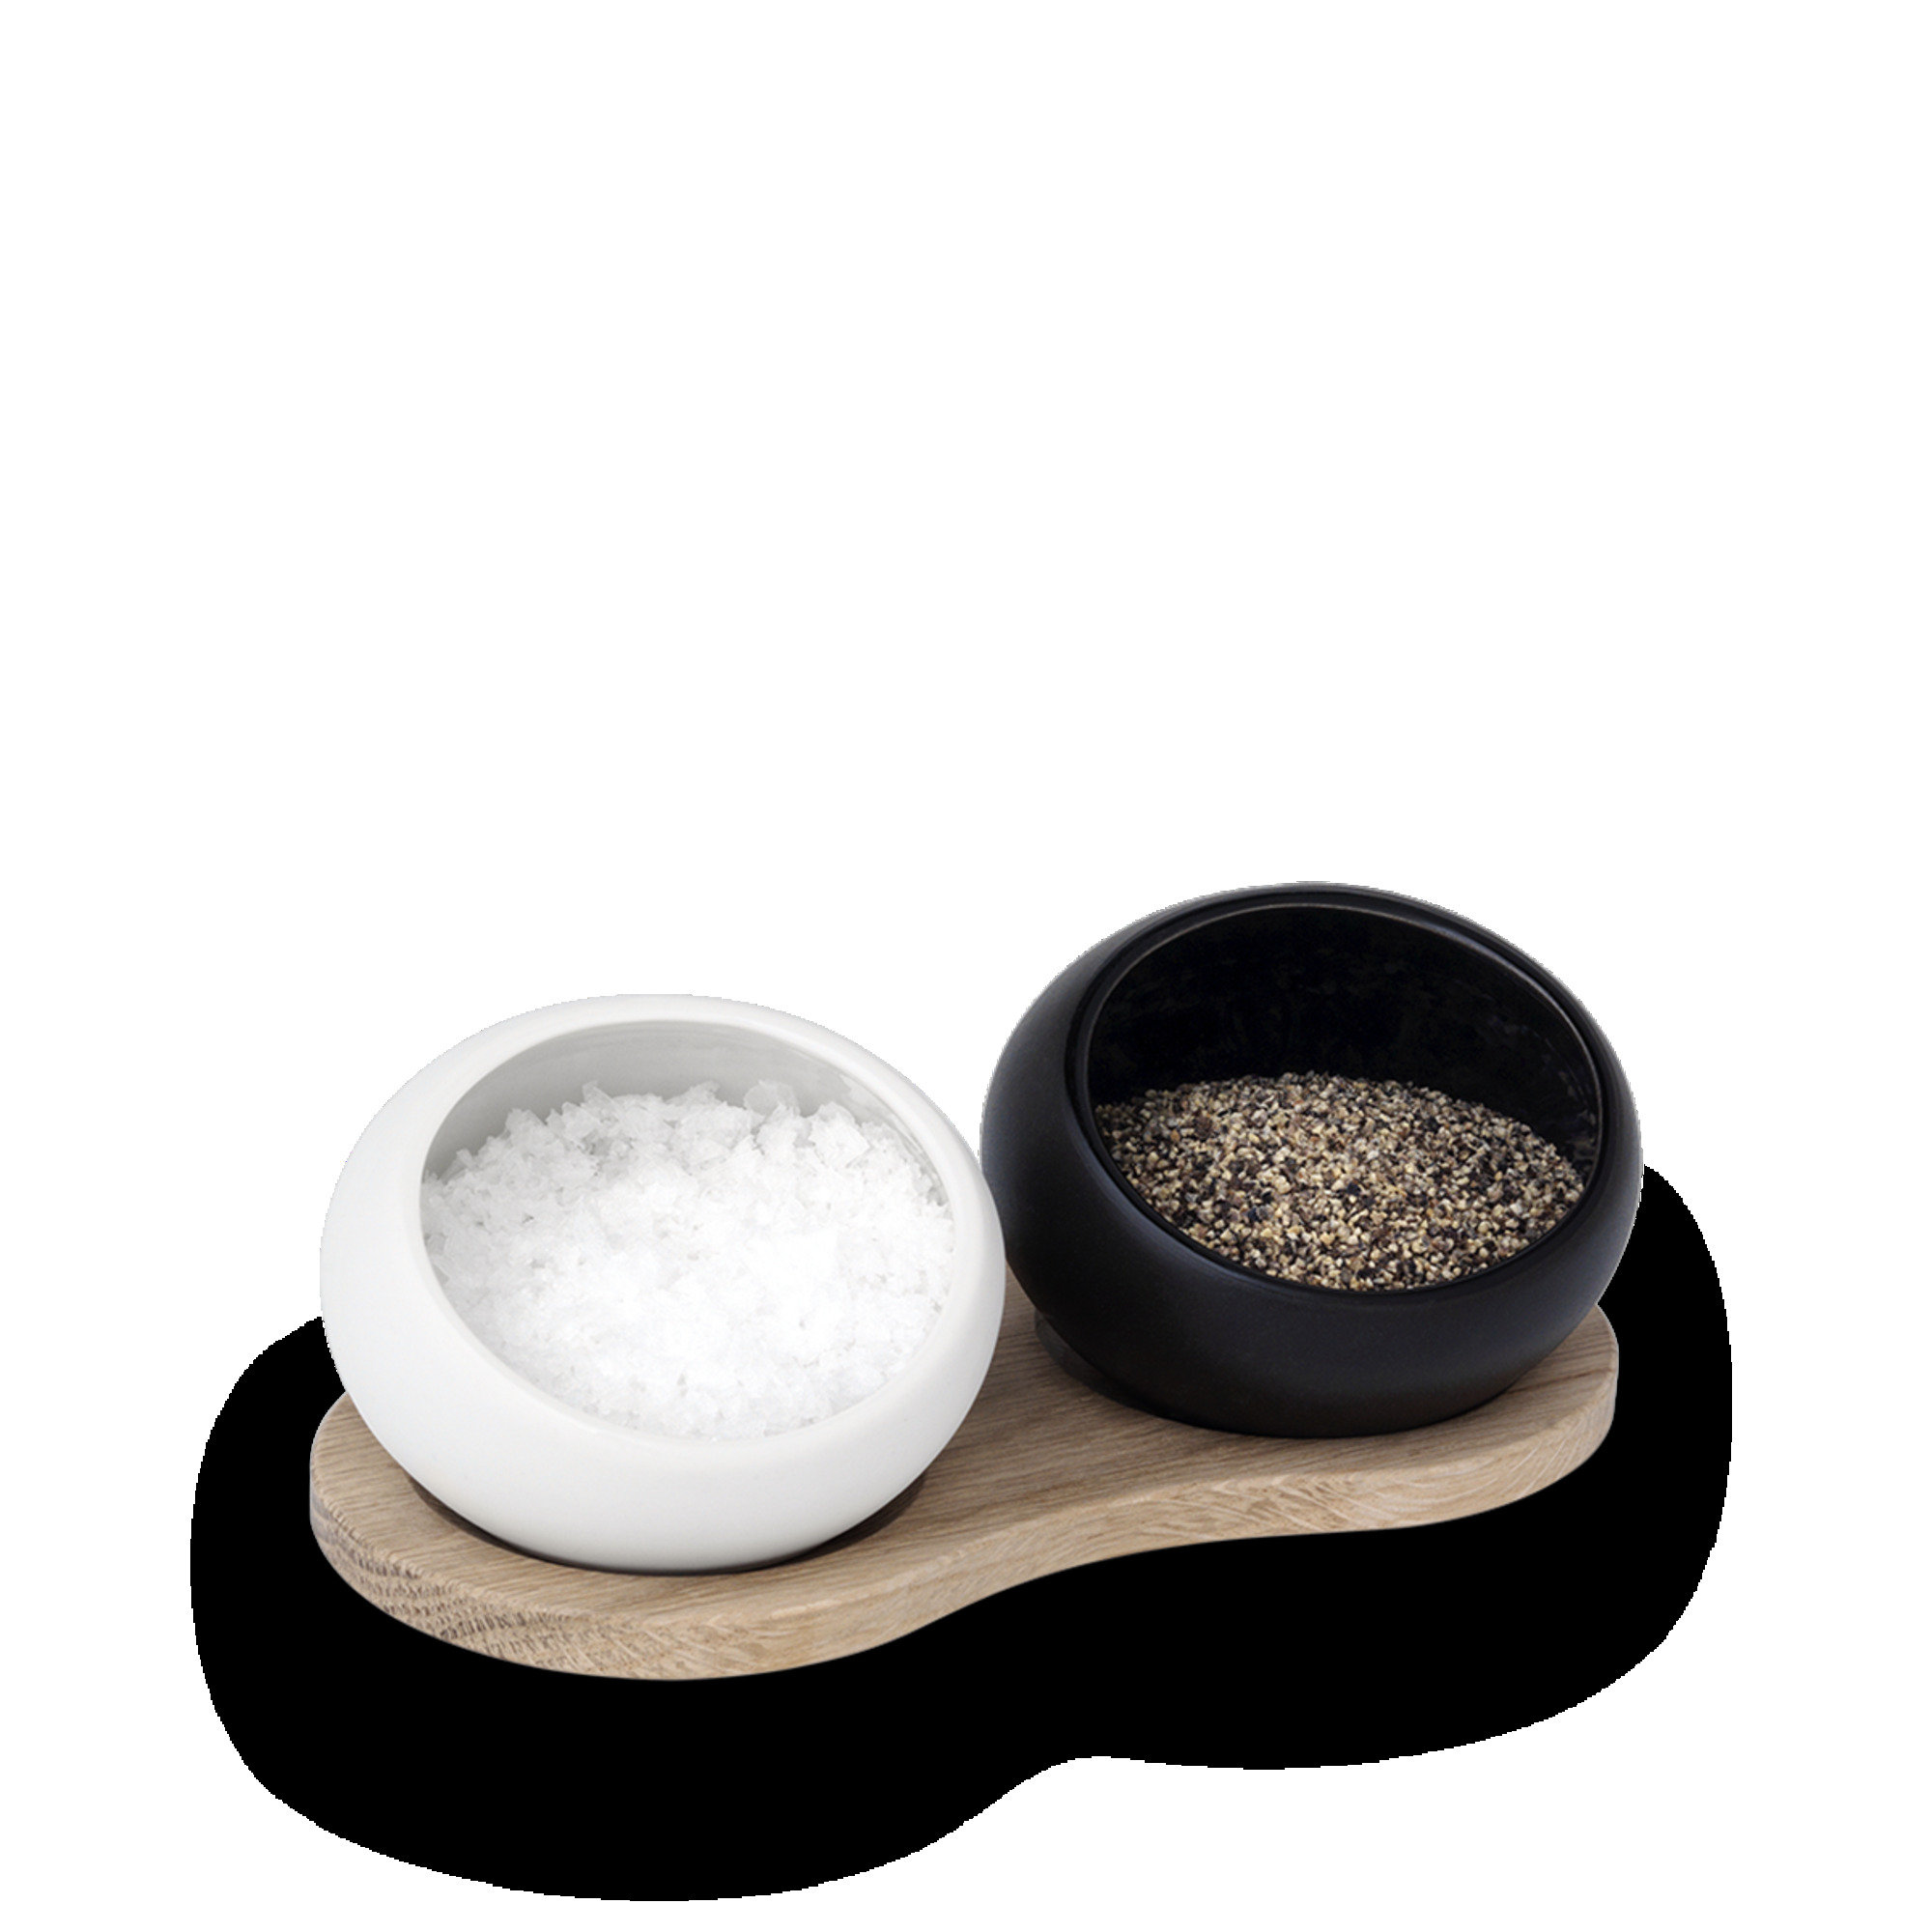 Marin White Salt and Pepper Shaker Set